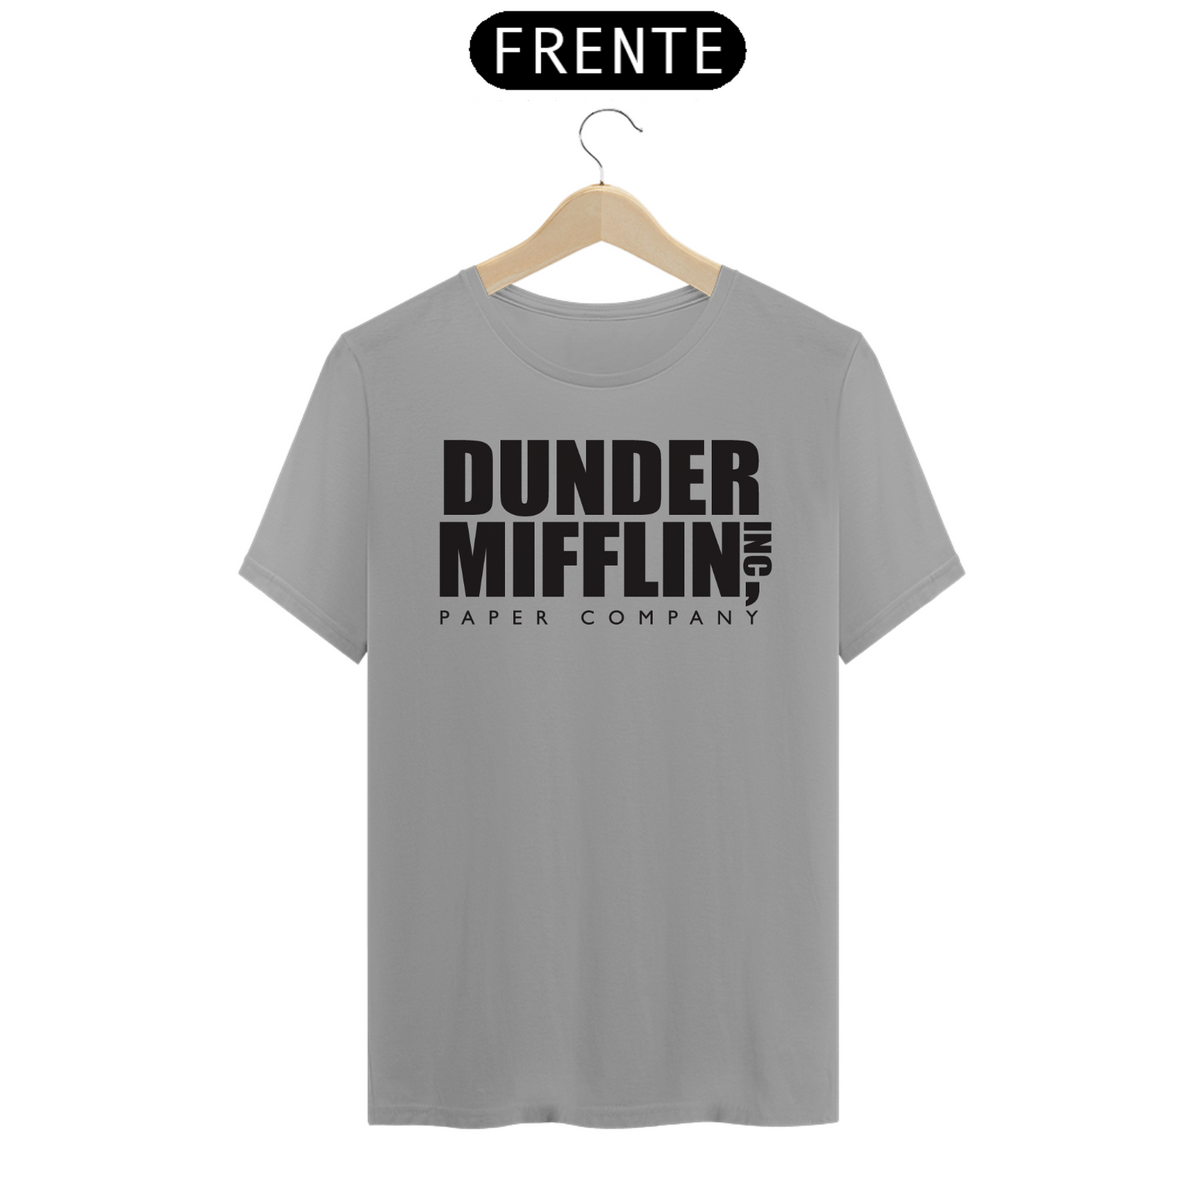 Nome do produto: The Office: Dunder Mifflin (cores claras)